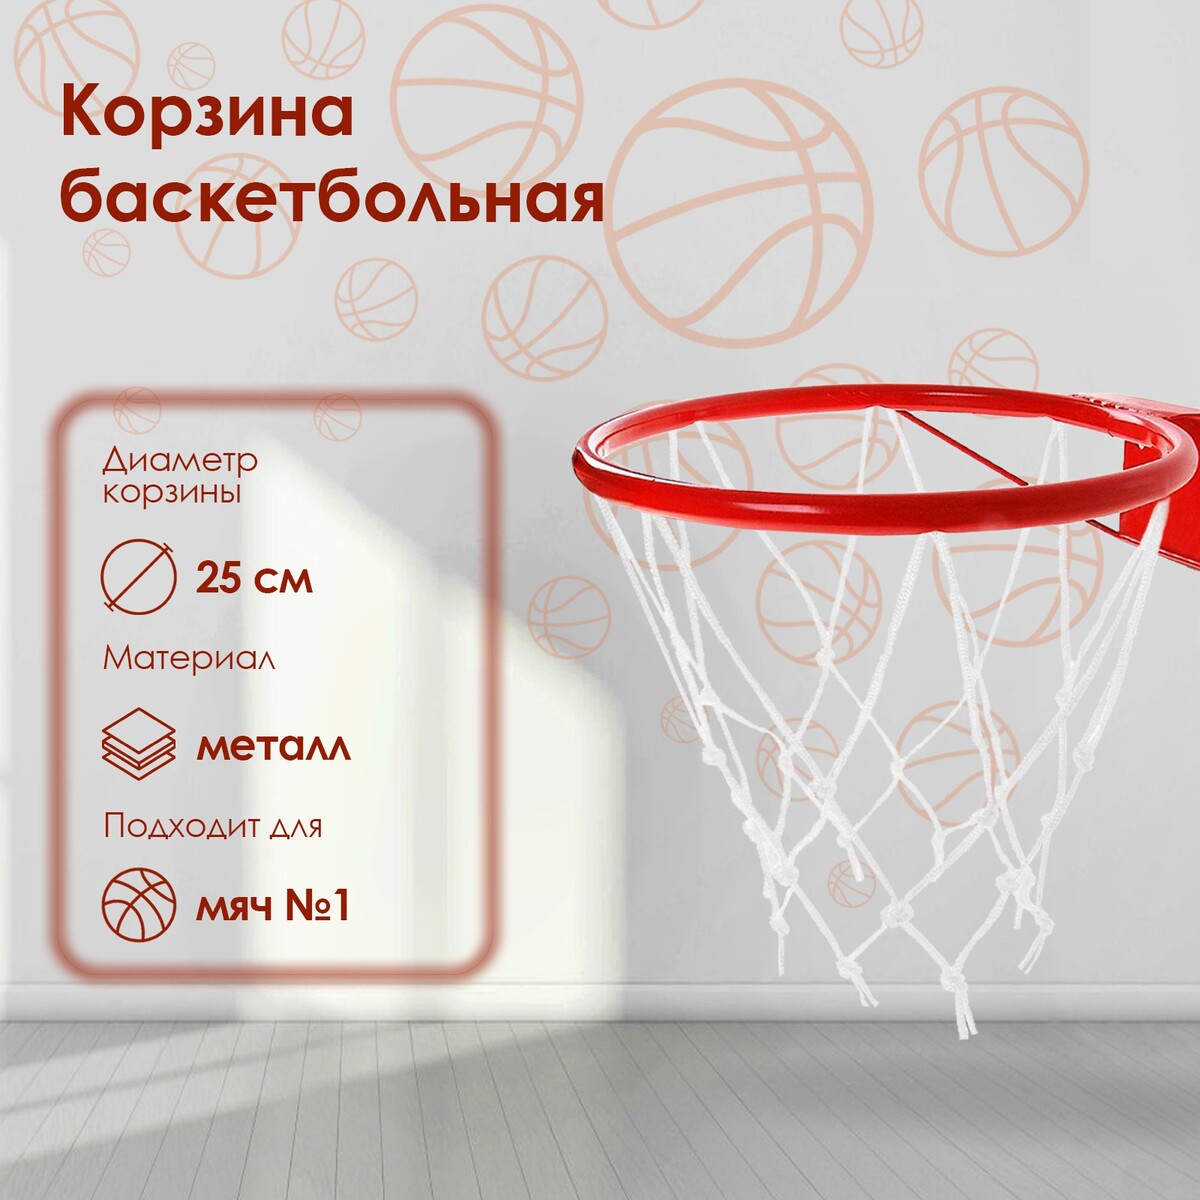 Корзина баскетбольная №1, d=250 мм, с упором и сеткой No brand